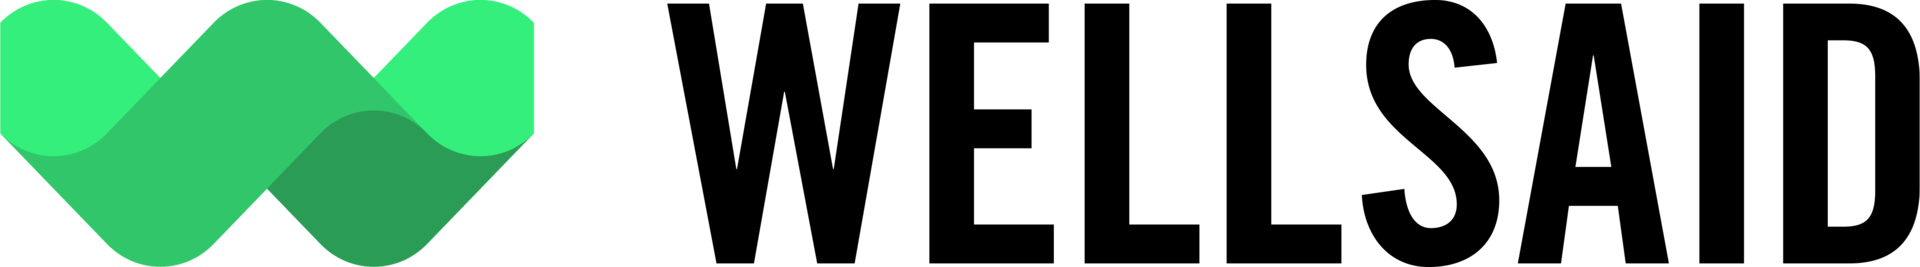 Webinar presenter logo